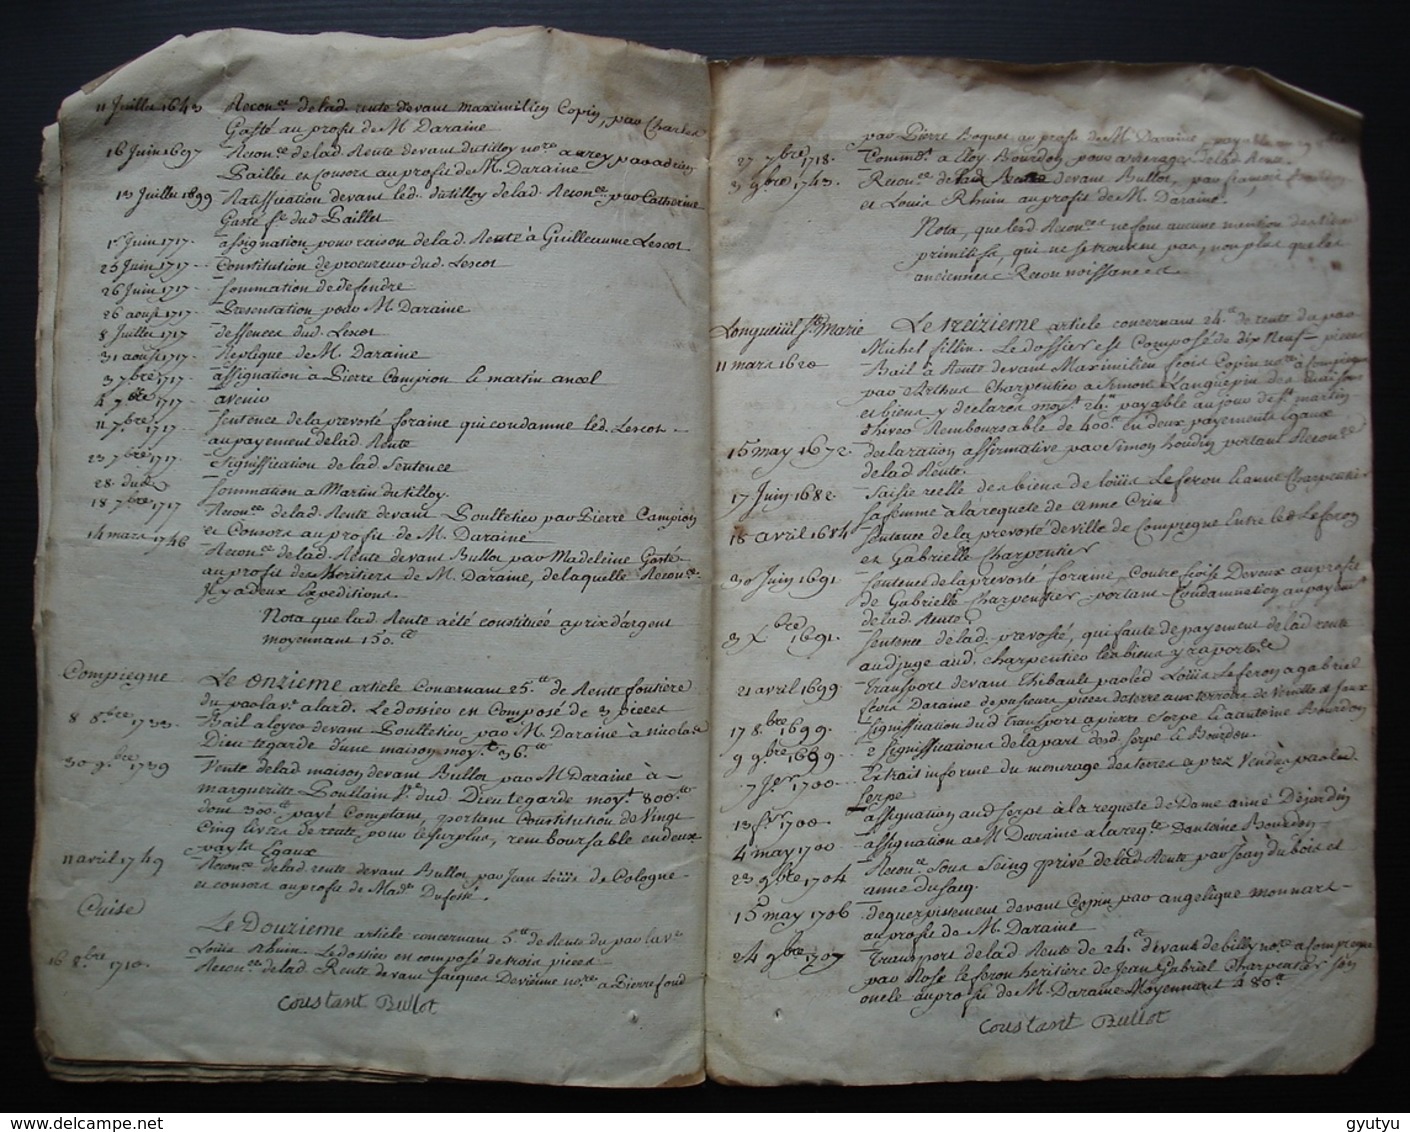 1765 Ferme de Mermont Crépy en Valois Oise Inventaire: titres Acquis par Bérenger de Duffossé, depuis 1485 16 pages